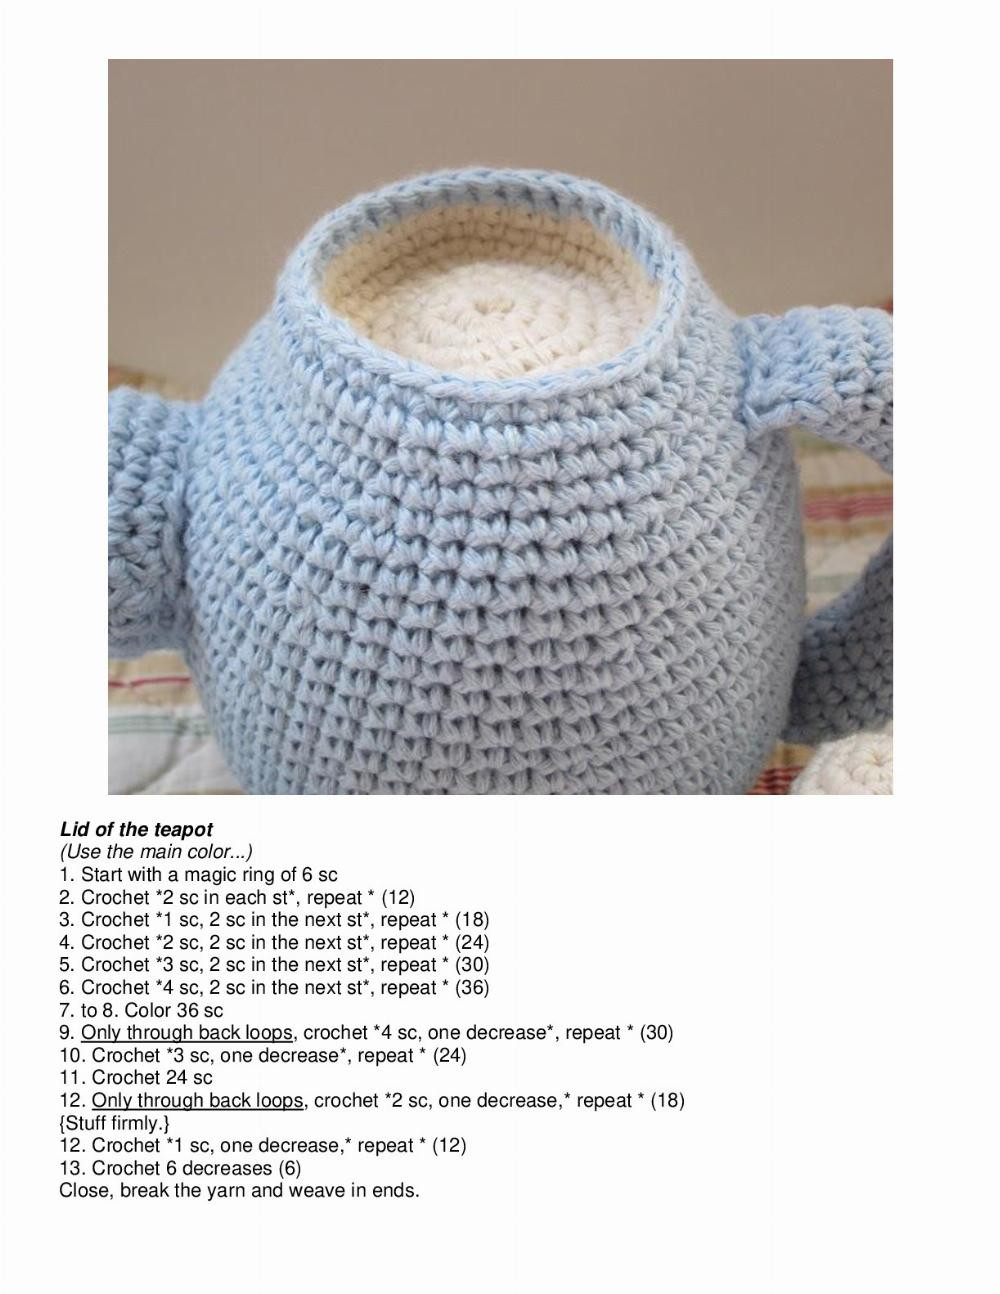 Tea set crochet pattern